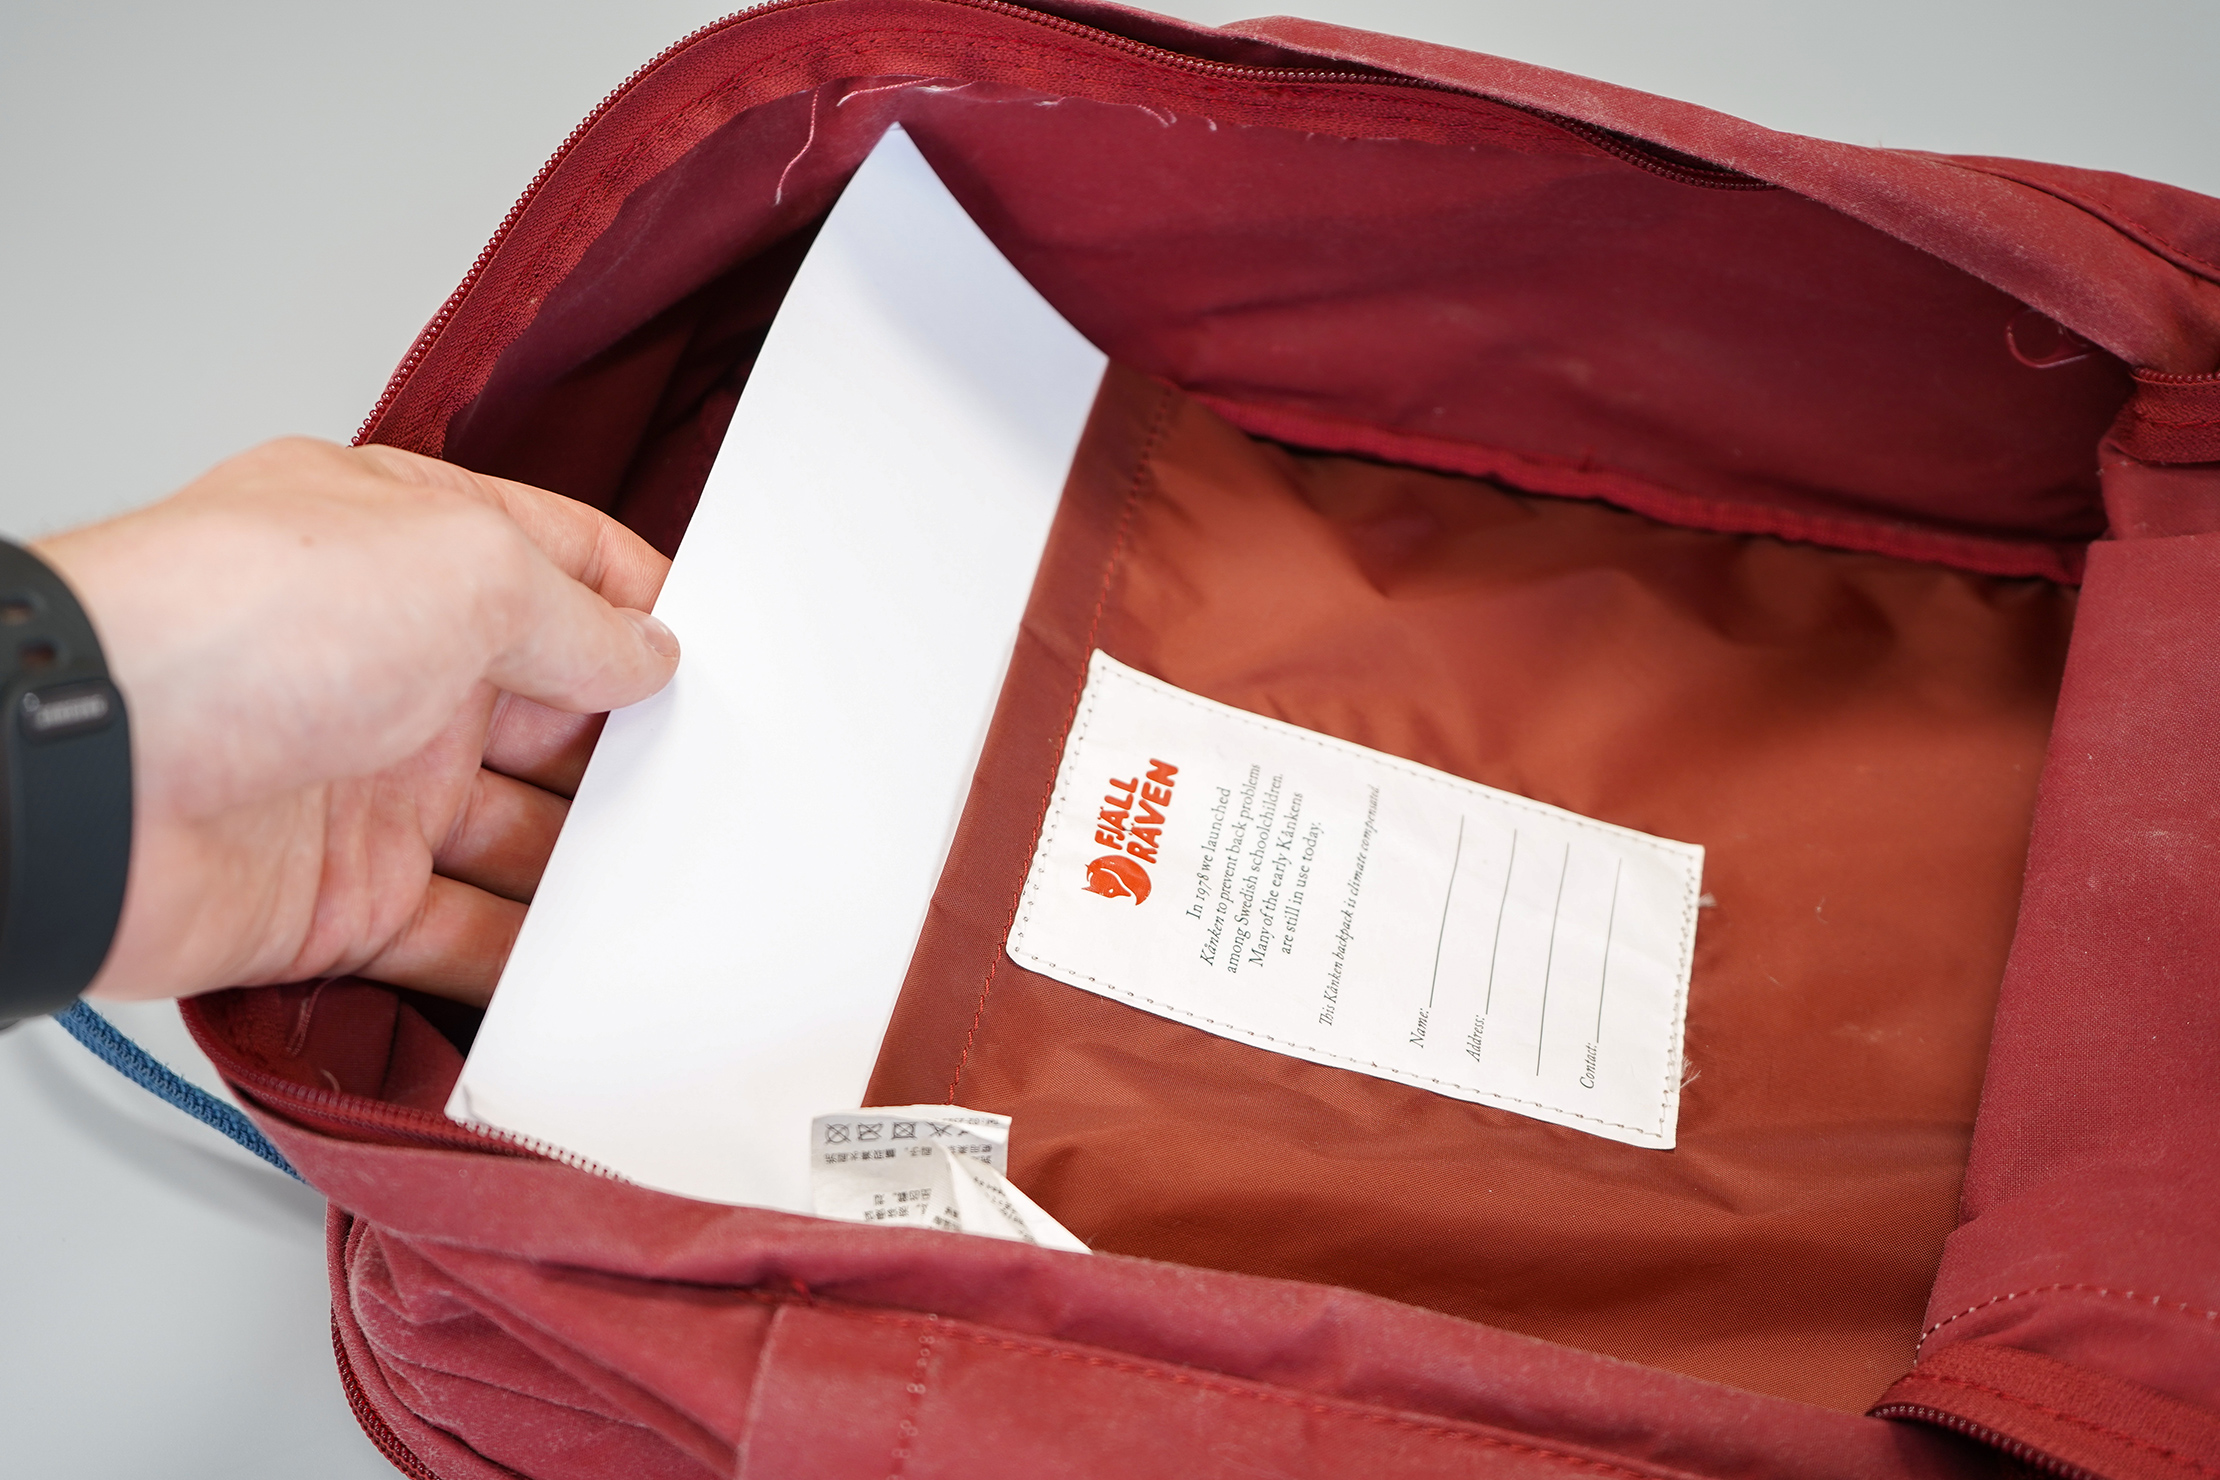 Fjallraven Kanken 13" Laptop Backpack Document Sleeve